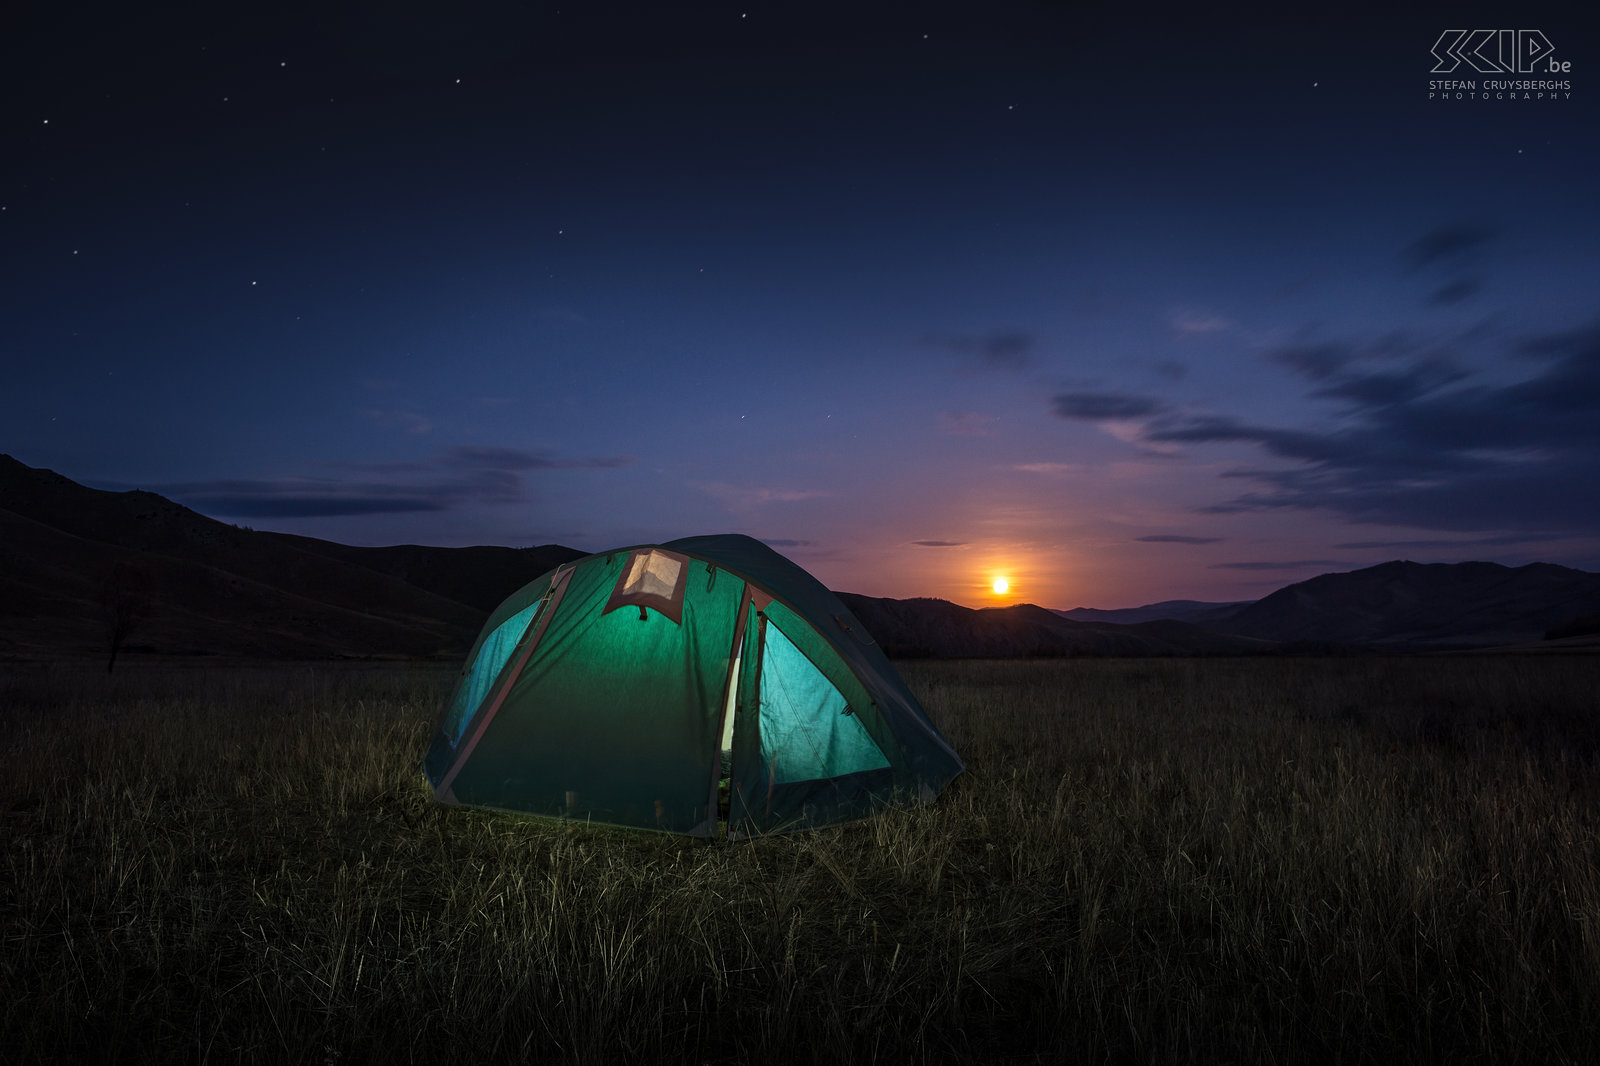 Khan Khentii - Tent bij volle maan We kampeerden en sliepen in een tent dus probeerde ik de laatste avond een nachtfoto te maken van onze verlichte tent en de opkomende volle maan. De dag nadien vertrokken we terug naar huis.  Stefan Cruysberghs